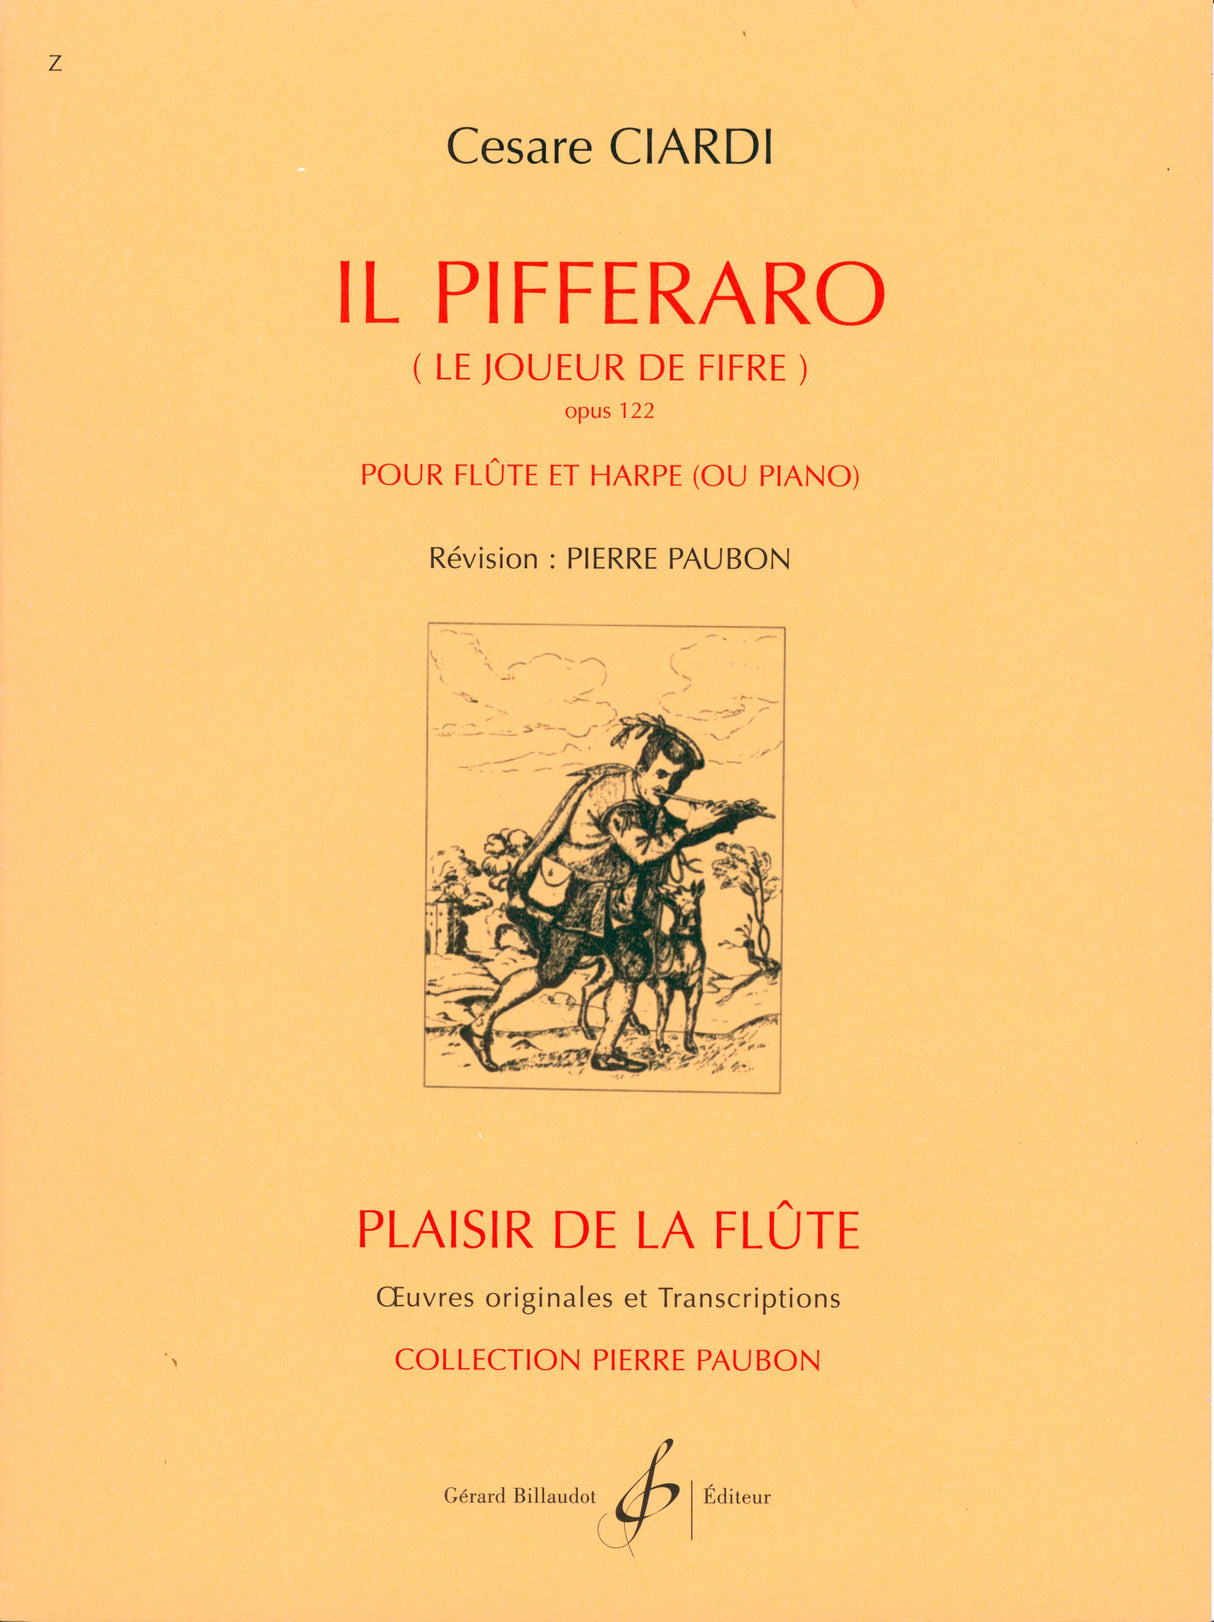 Ciardi: Il Pifferaro, Op. 122